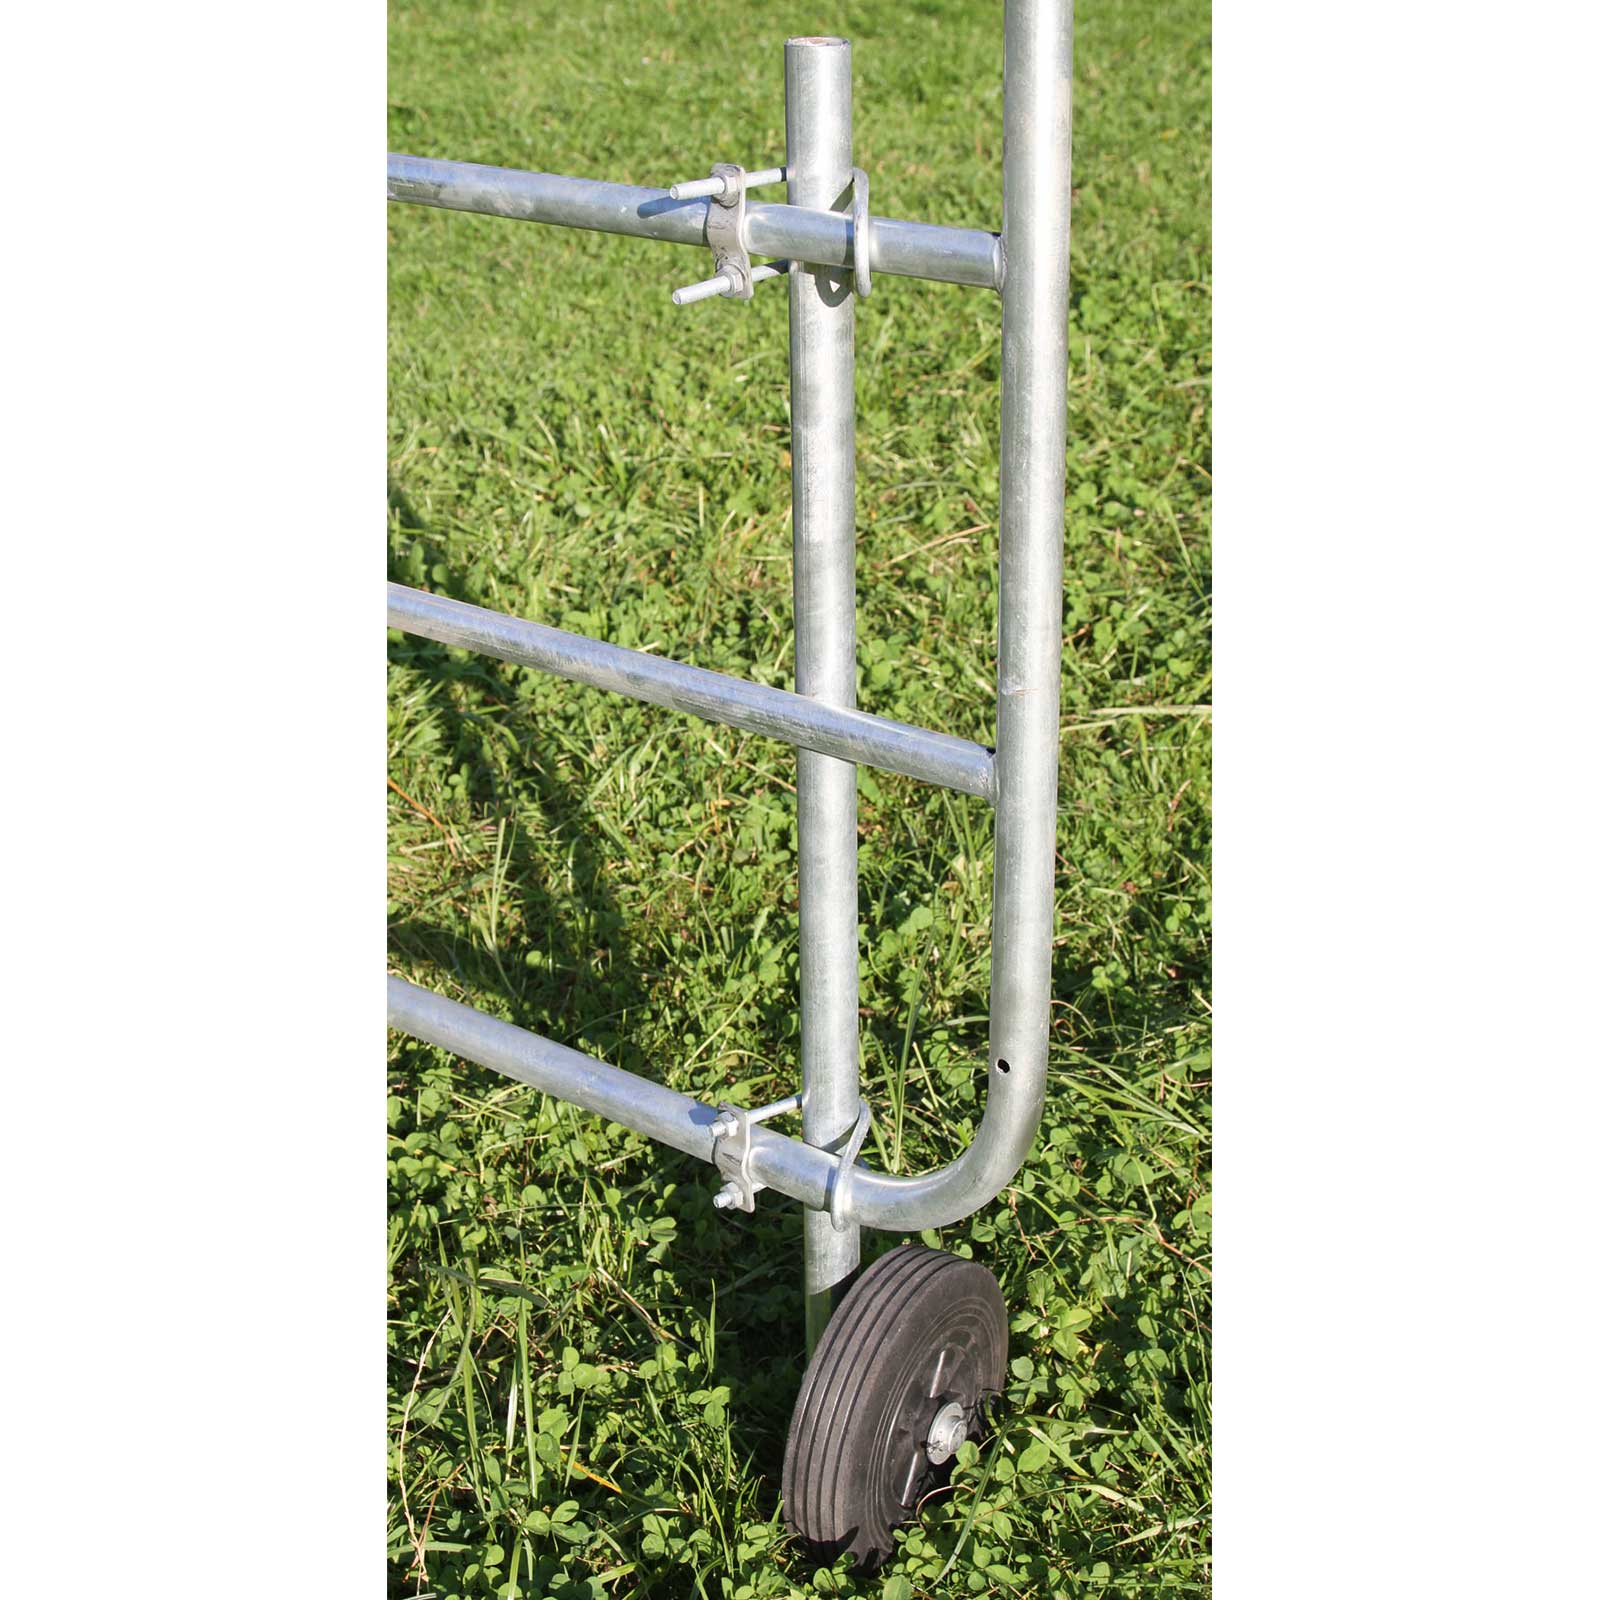 Stabiliser Wheel for fence gates